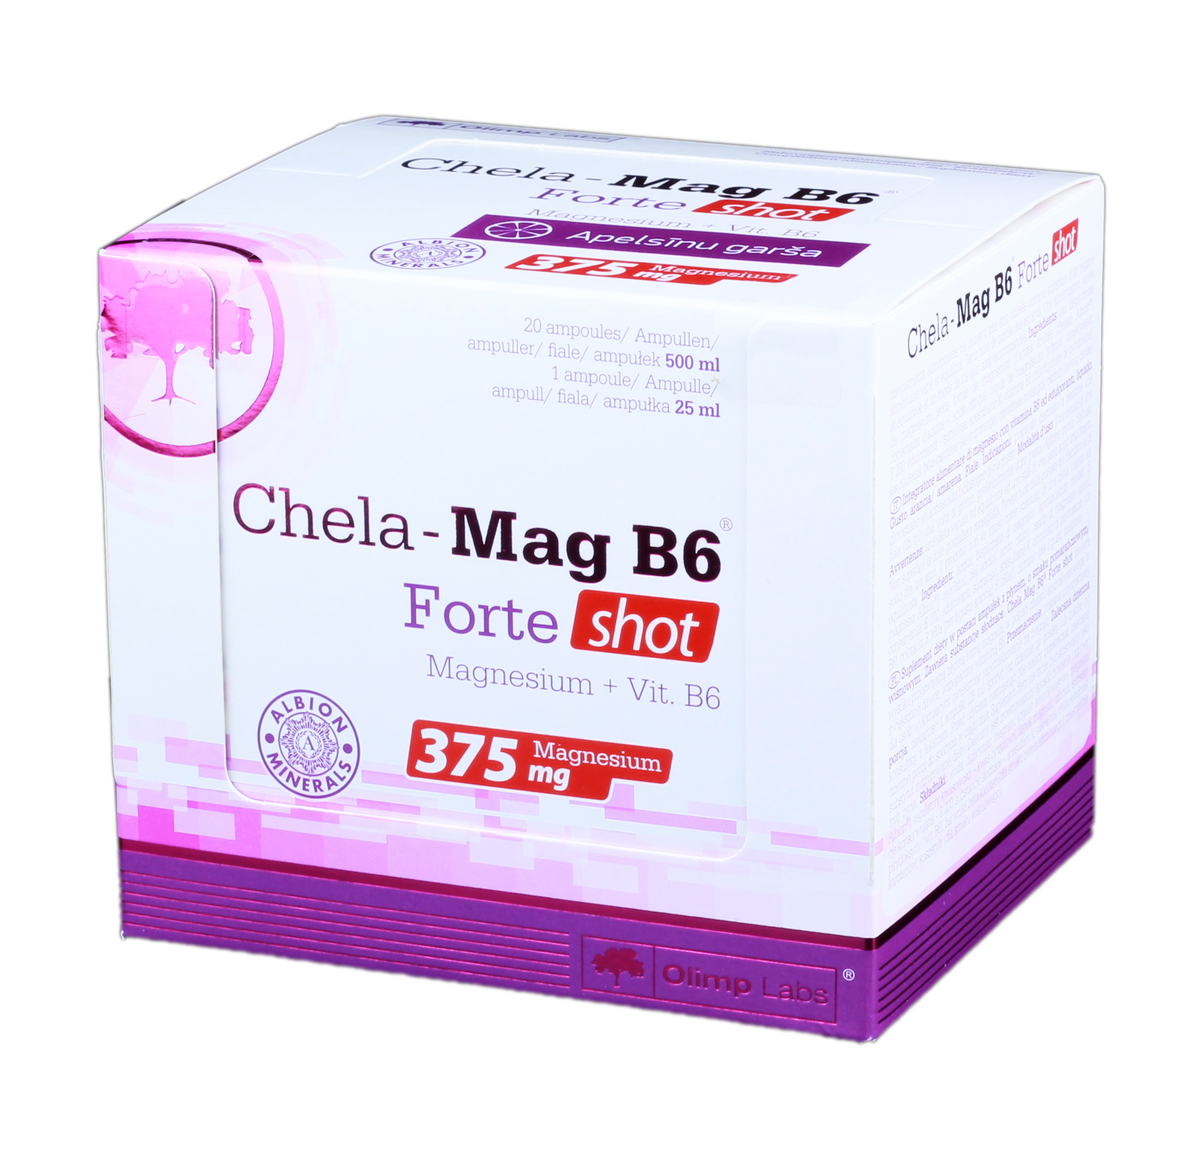 Chela mag b6